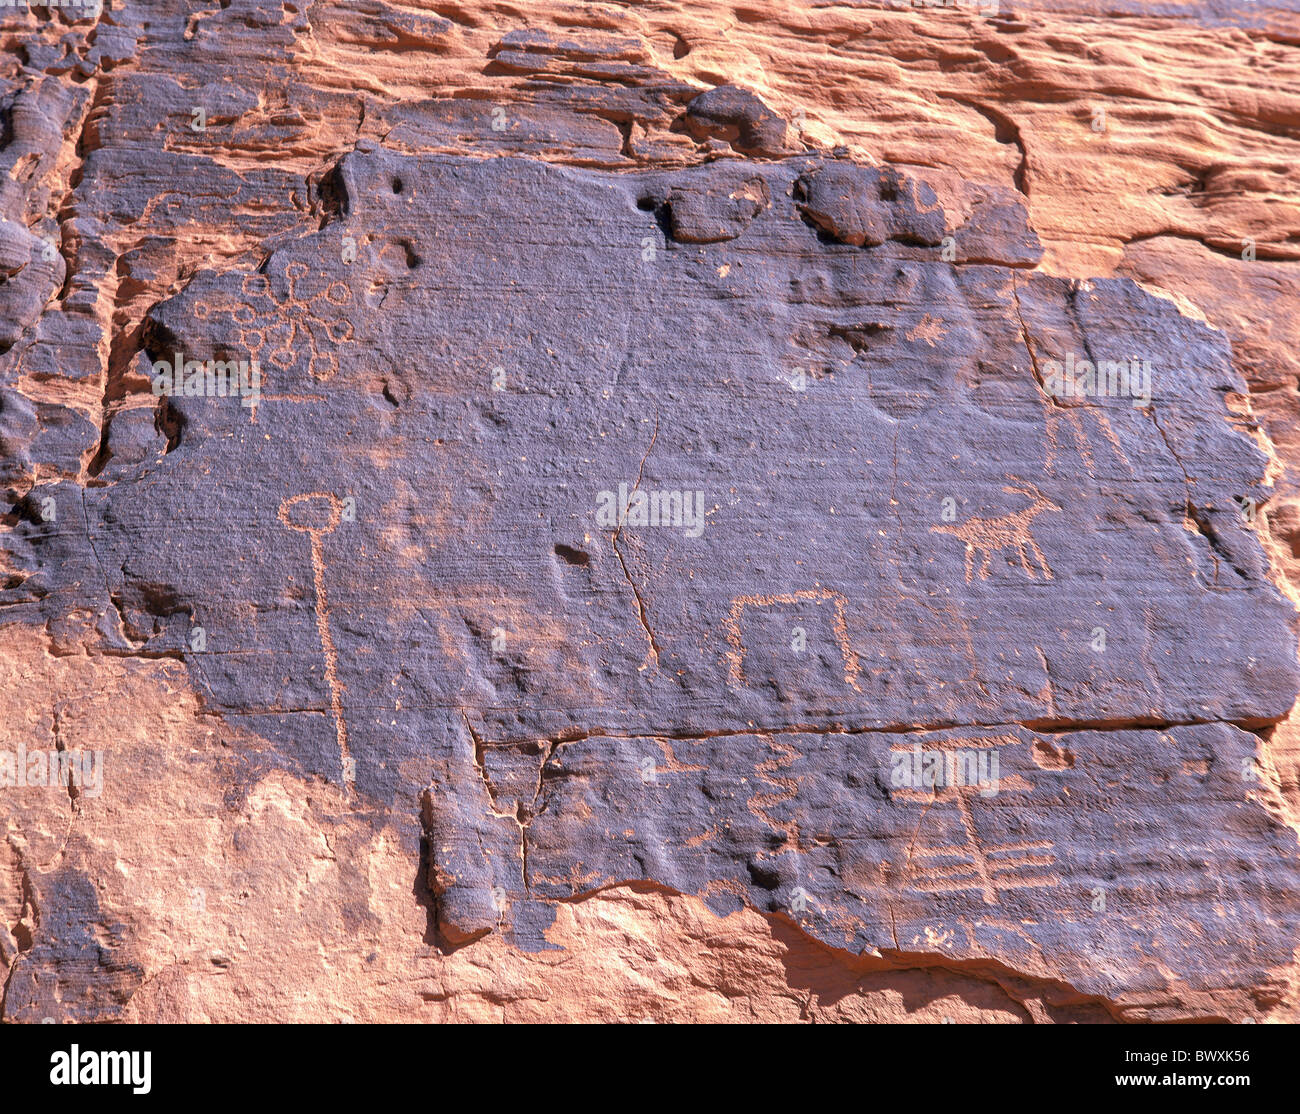 Les temps primitifs peinture dessins falaise Petroglyphes Valley of Fire NEVADA USA Amérique du Nord Banque D'Images